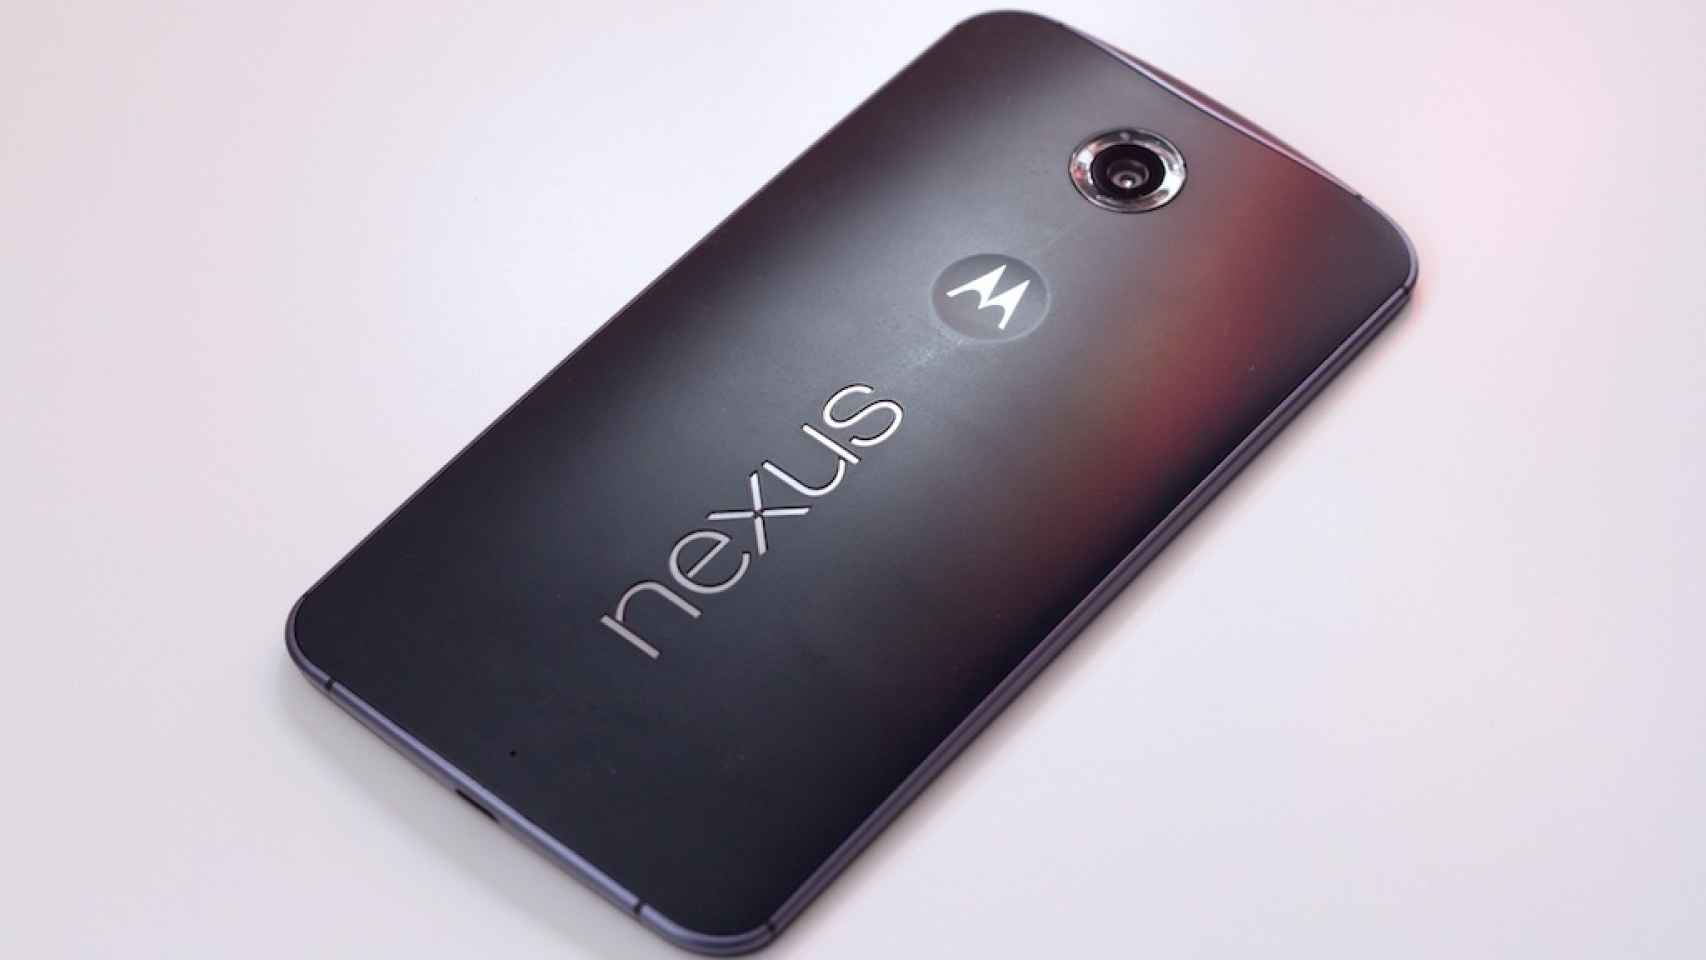 El Nexus 6 no tiene lector de huellas gracias a Apple